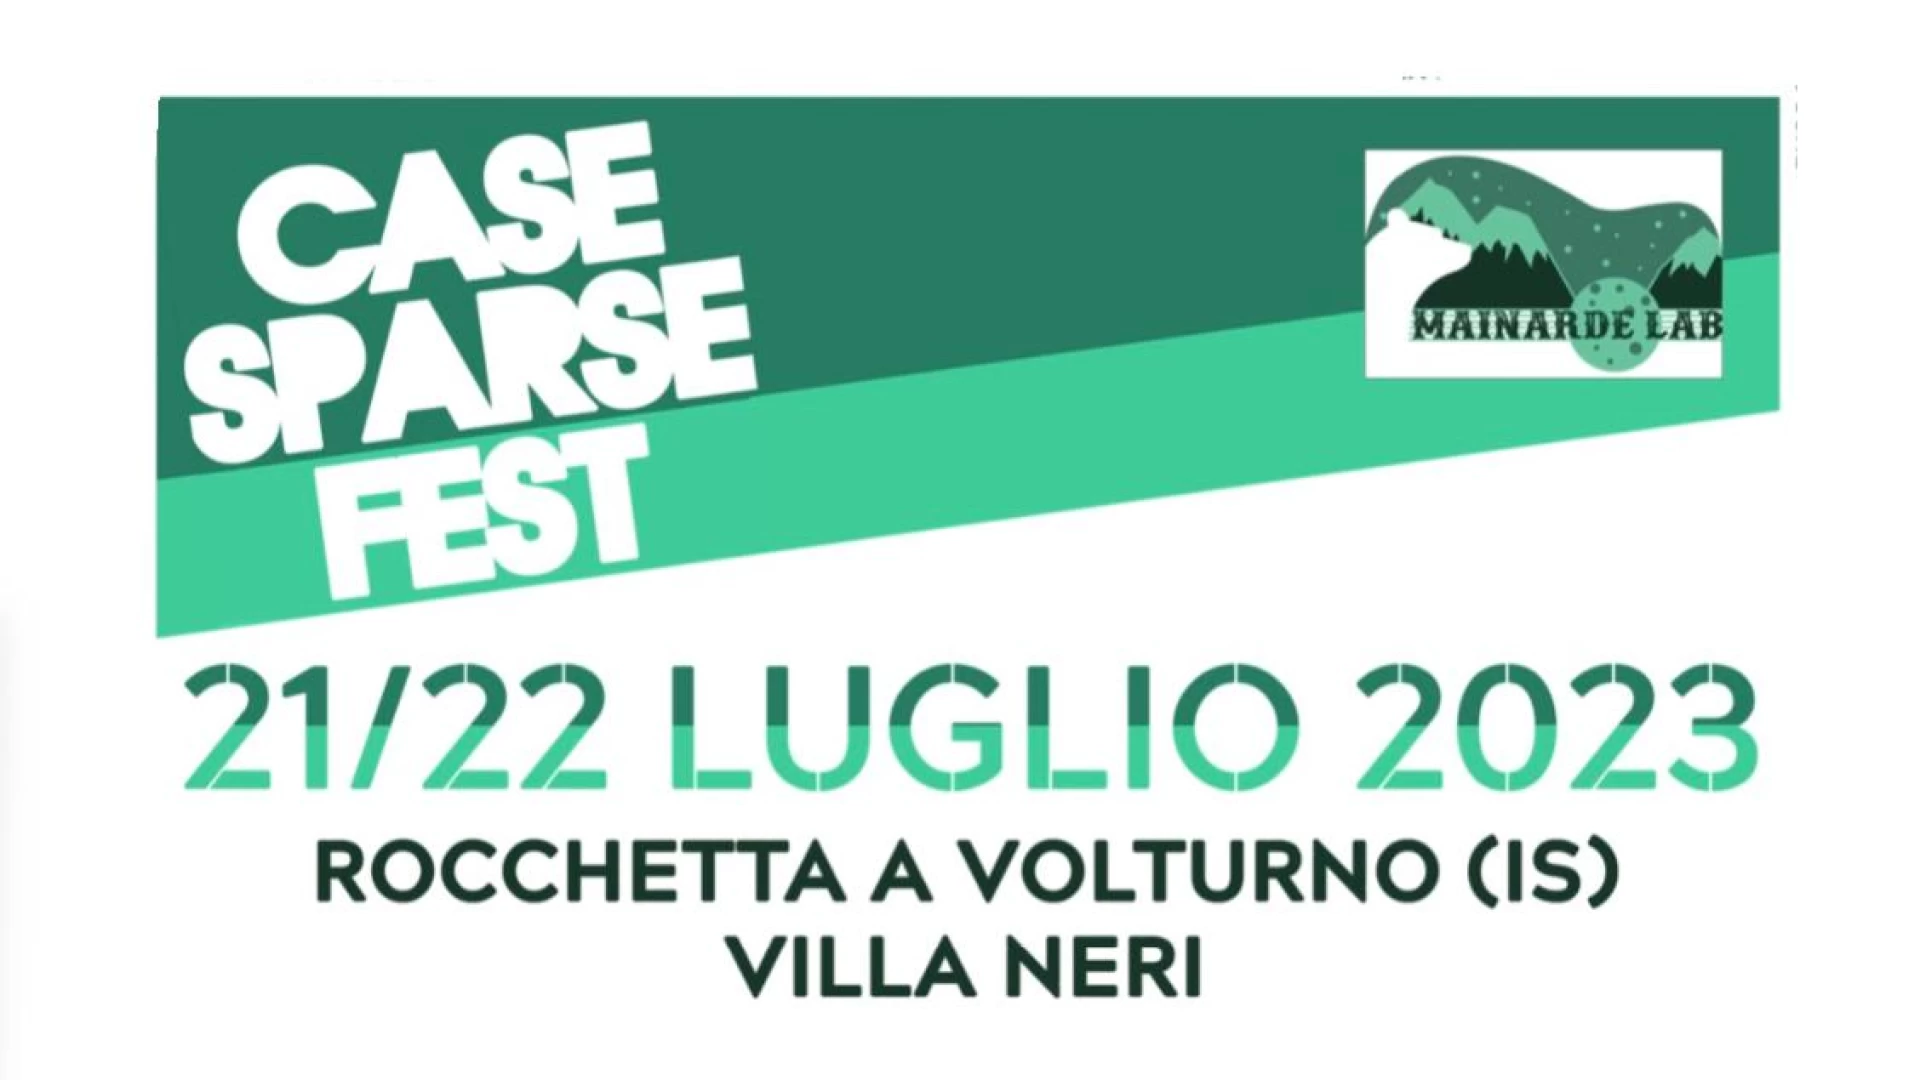 Rocchetta a Volturno: torna il Case Sparse Fest organizzato dall’Associazione Mainarde Lab. Appuntamento il 21e22 luglio.